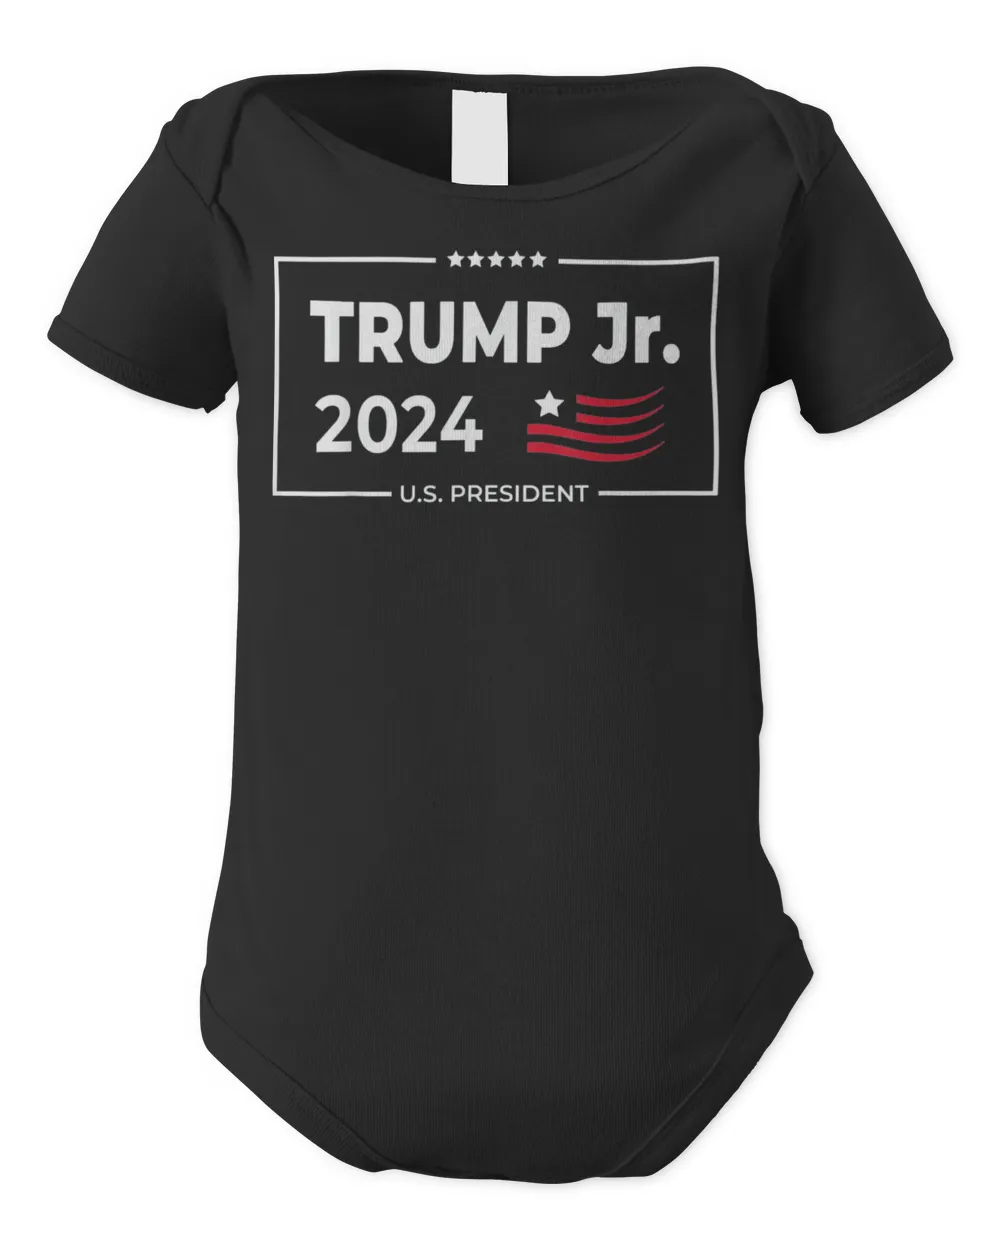 Donald Trump Jr. For President 2024 Trump Republican T-Shirt